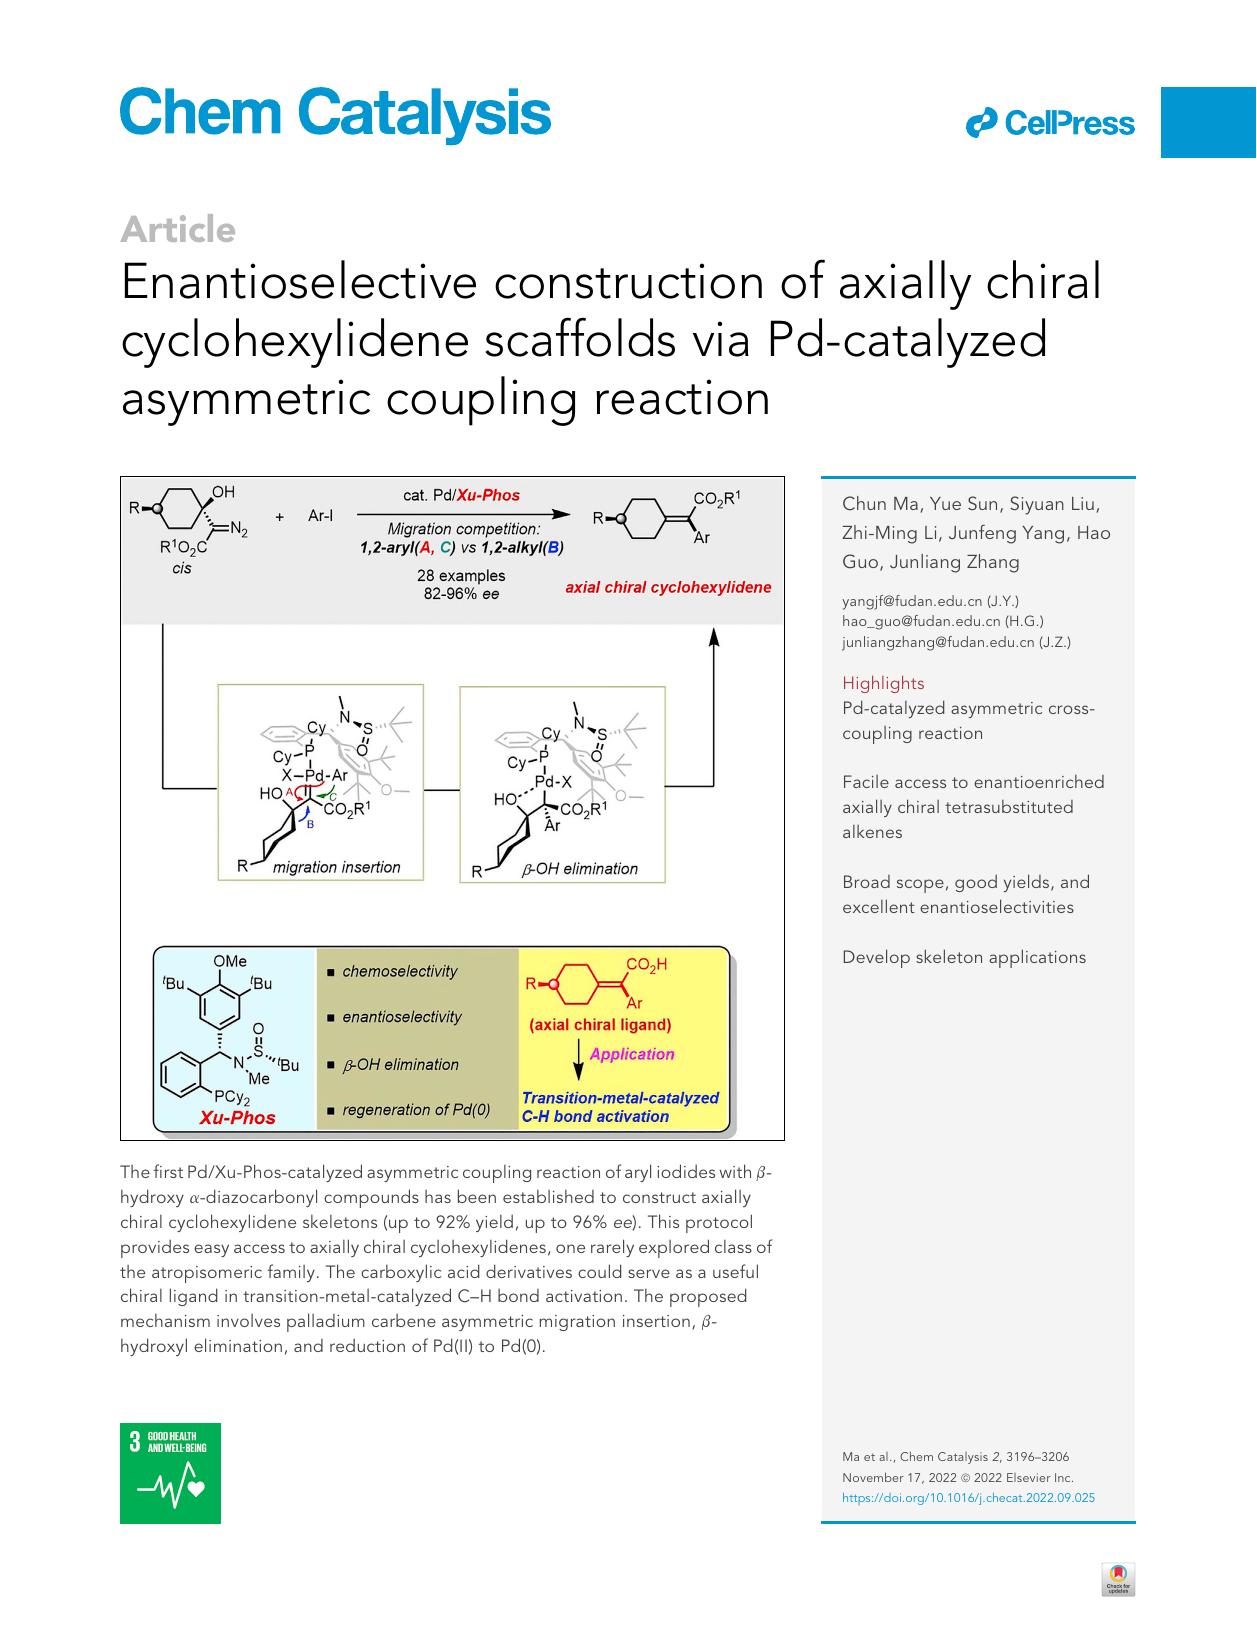 Enantioselective construction of axially chiral cyclohexylidene scaffolds via Pd-catalyzed asymmetric coupling reaction by Chun Ma & Yue Sun & Siyuan Liu & Zhi-Ming Li & Junfeng Yang & Hao Guo & Junliang Zhang